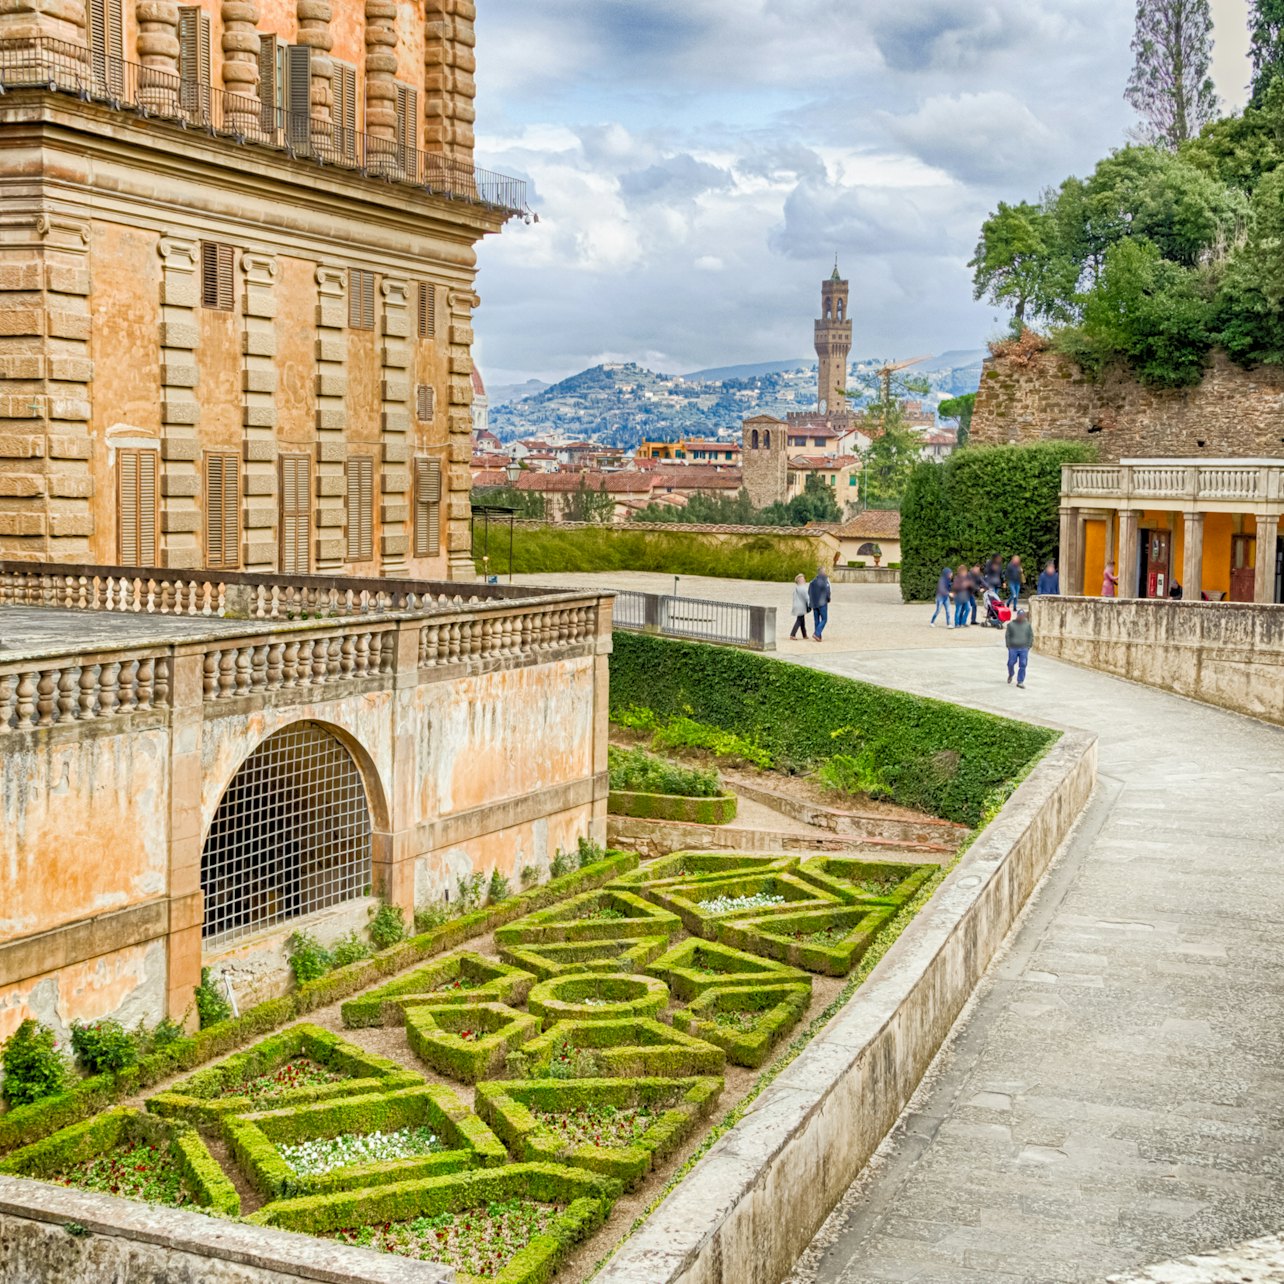 Uffizi Gallery, Palazzo Pitti & Boboli Gardens: Skip The Line - Accommodations in Florence